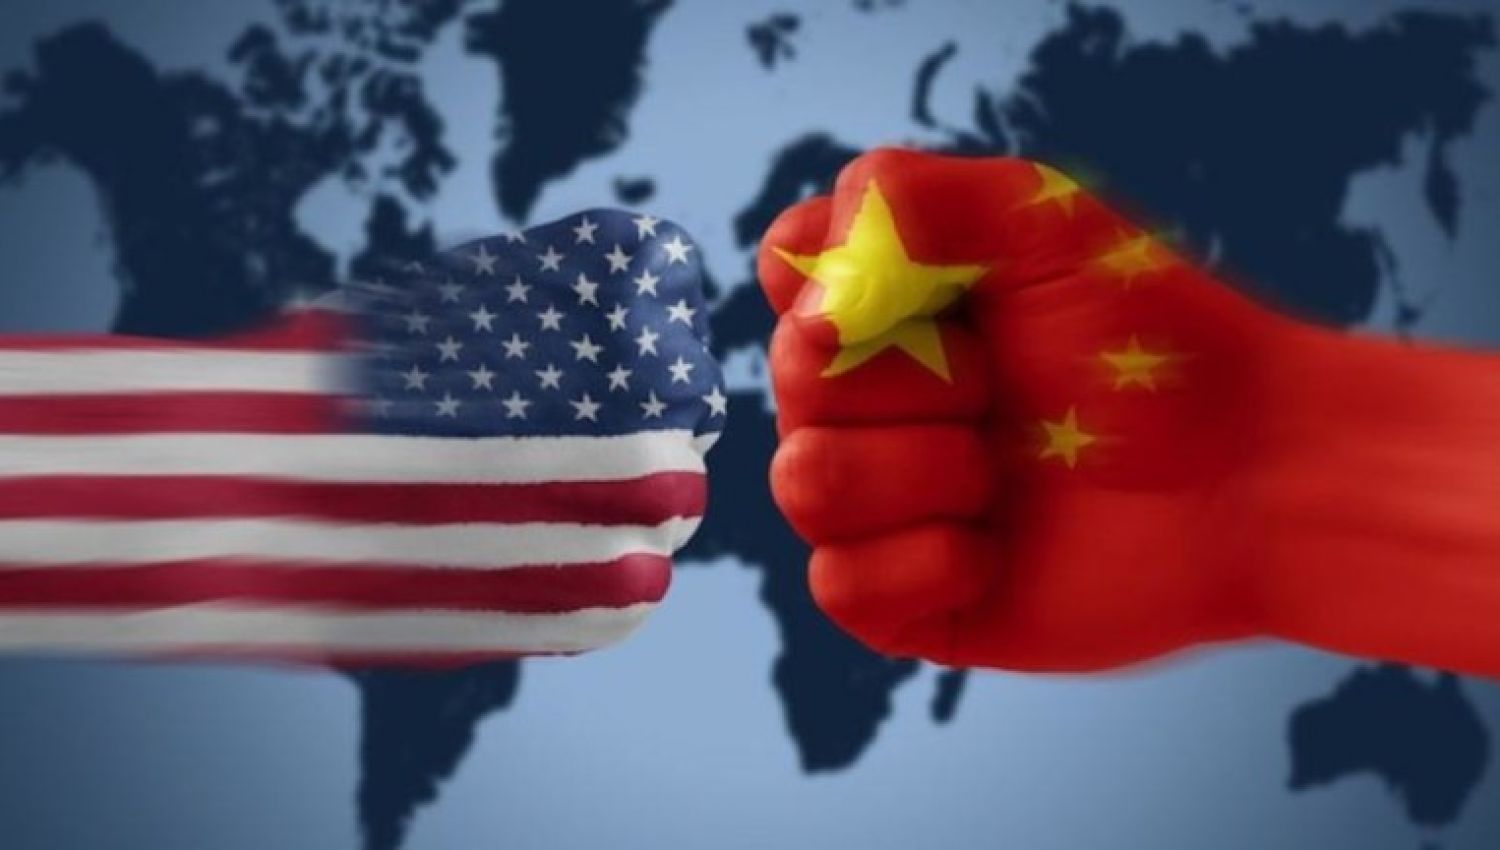  كيف ستبدو حرب الولايات المتحدة مع الصين؟